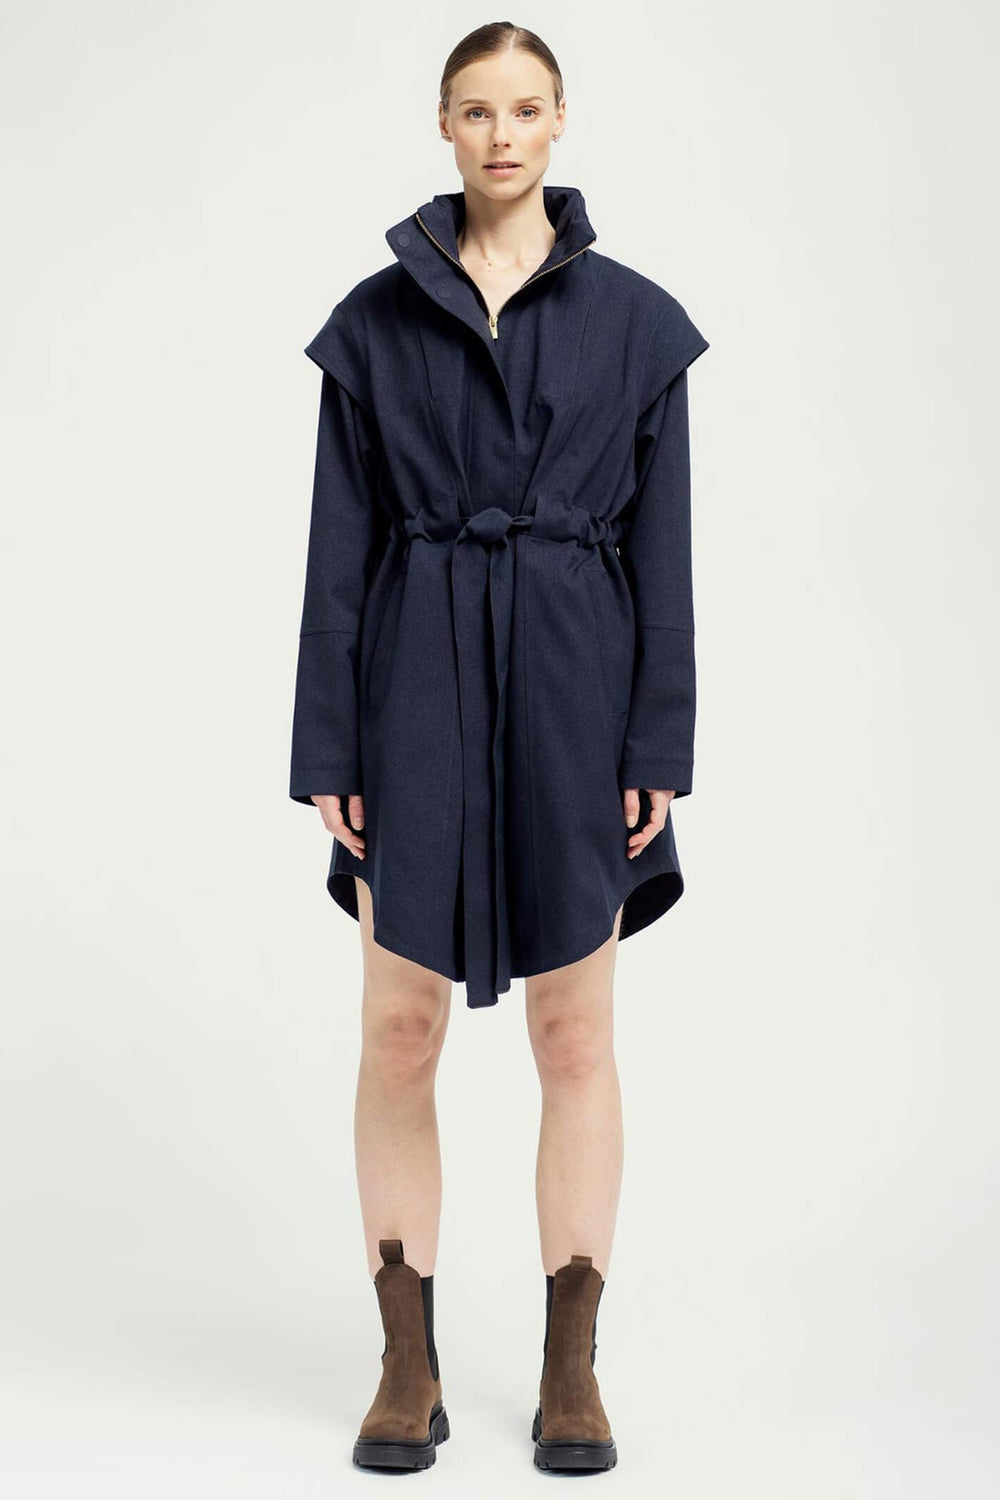 BRGN 15032T2 095 New Dark Navy Monsun Wateproof Coat - Olivia Grace Fashion